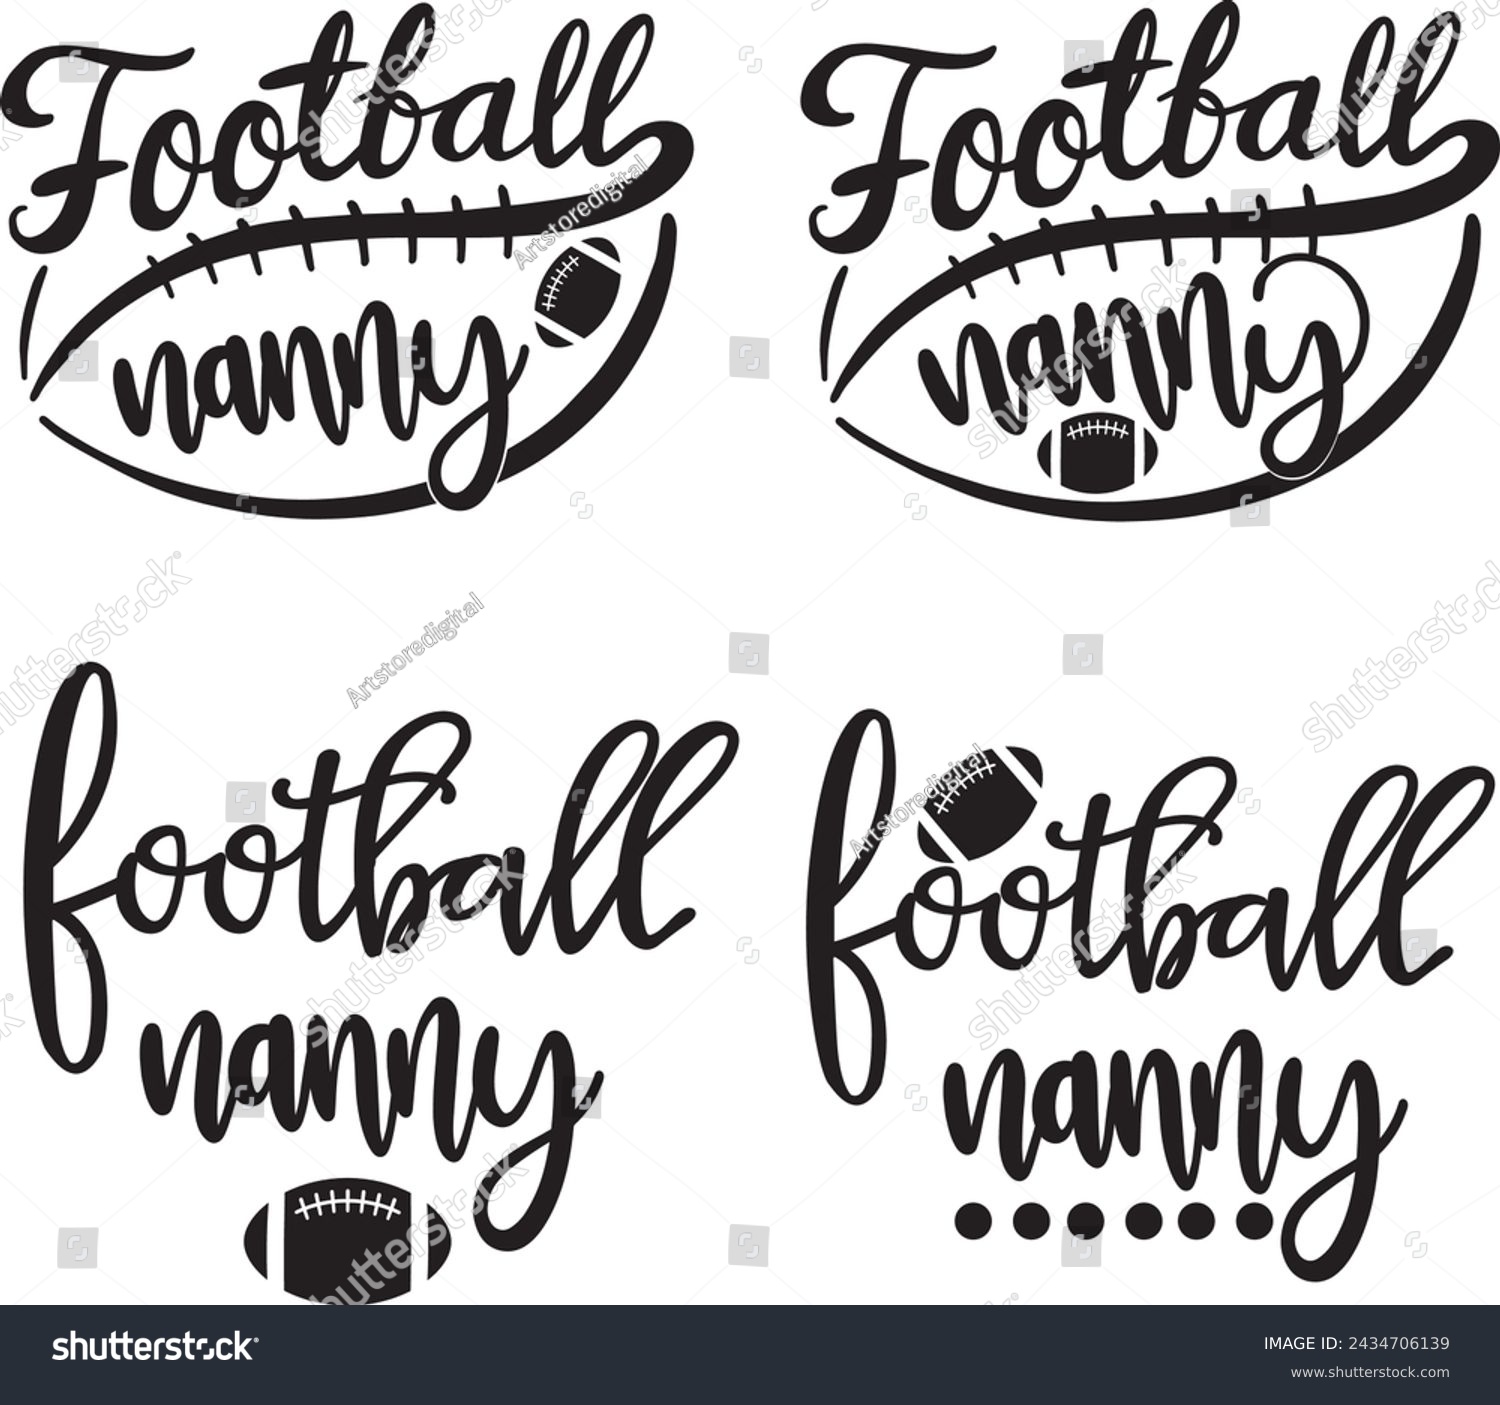 SVG of Football nanny, american football, football love, football family vector illustration file svg